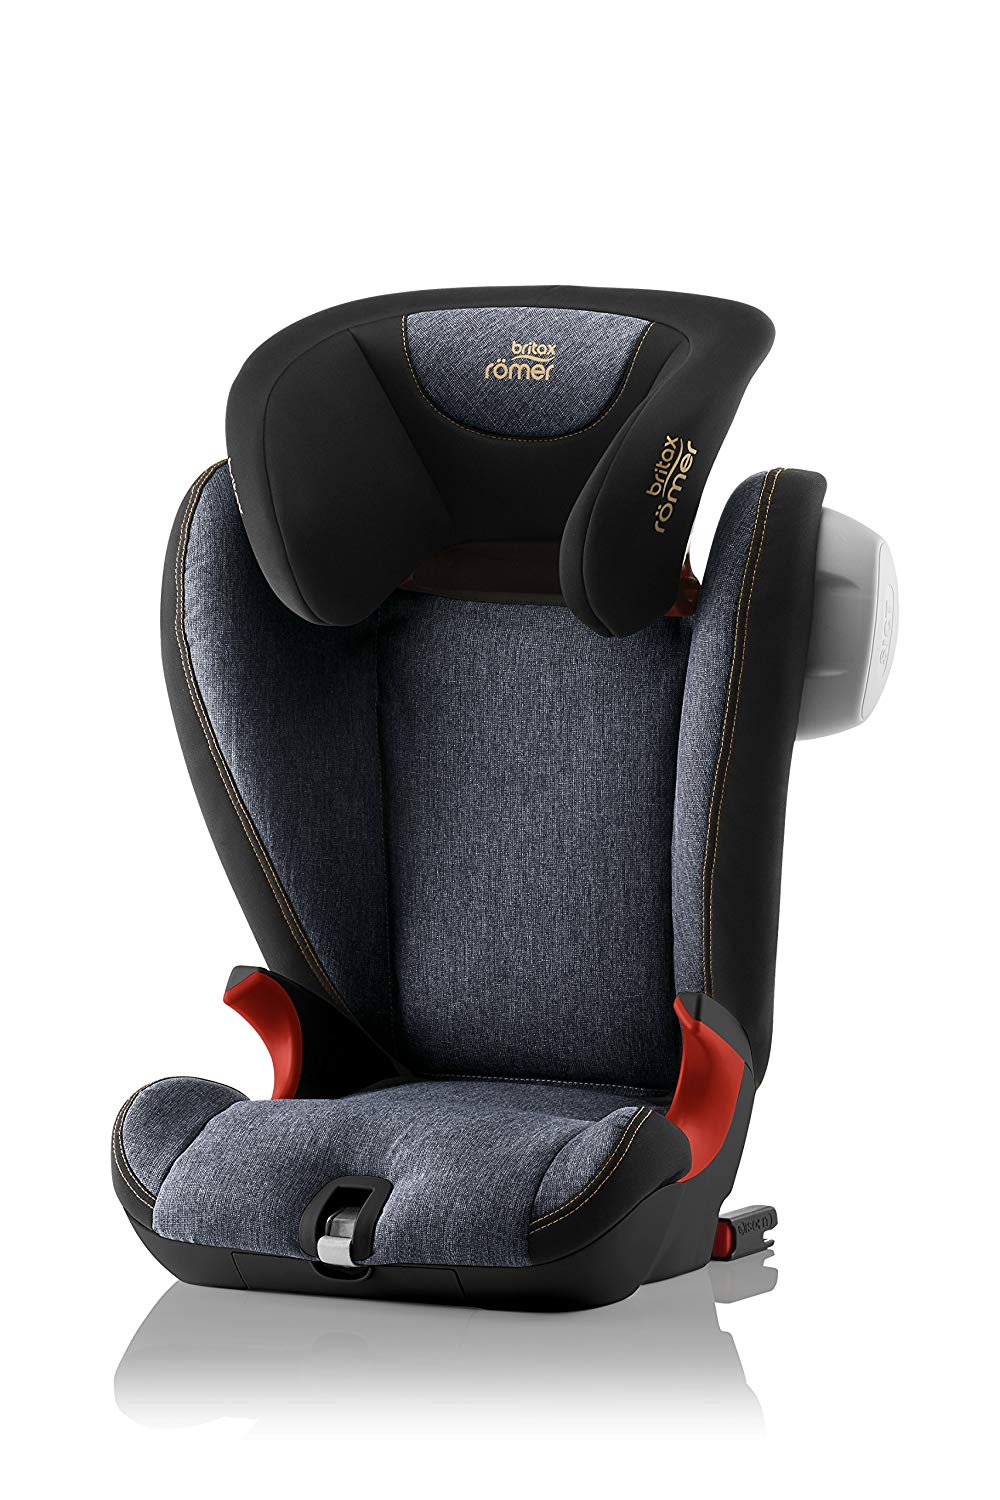 Britax Römer Kidfix SL SICT Child Car Seat Group 2/3, 15 - 36 kg. with SICT